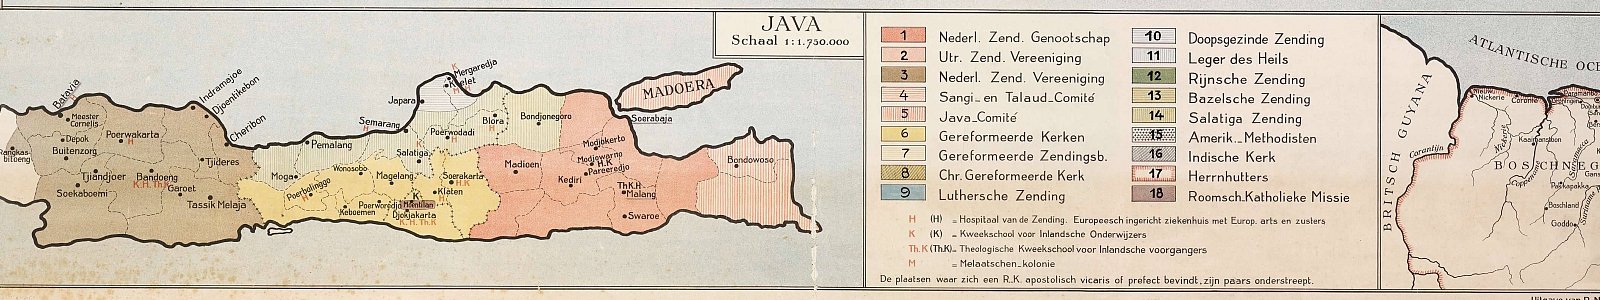 'Zendingskaart van Oost- en West-Indië', door Evert Nijland (Utrecht: C.H.E. Breijer, 1891)